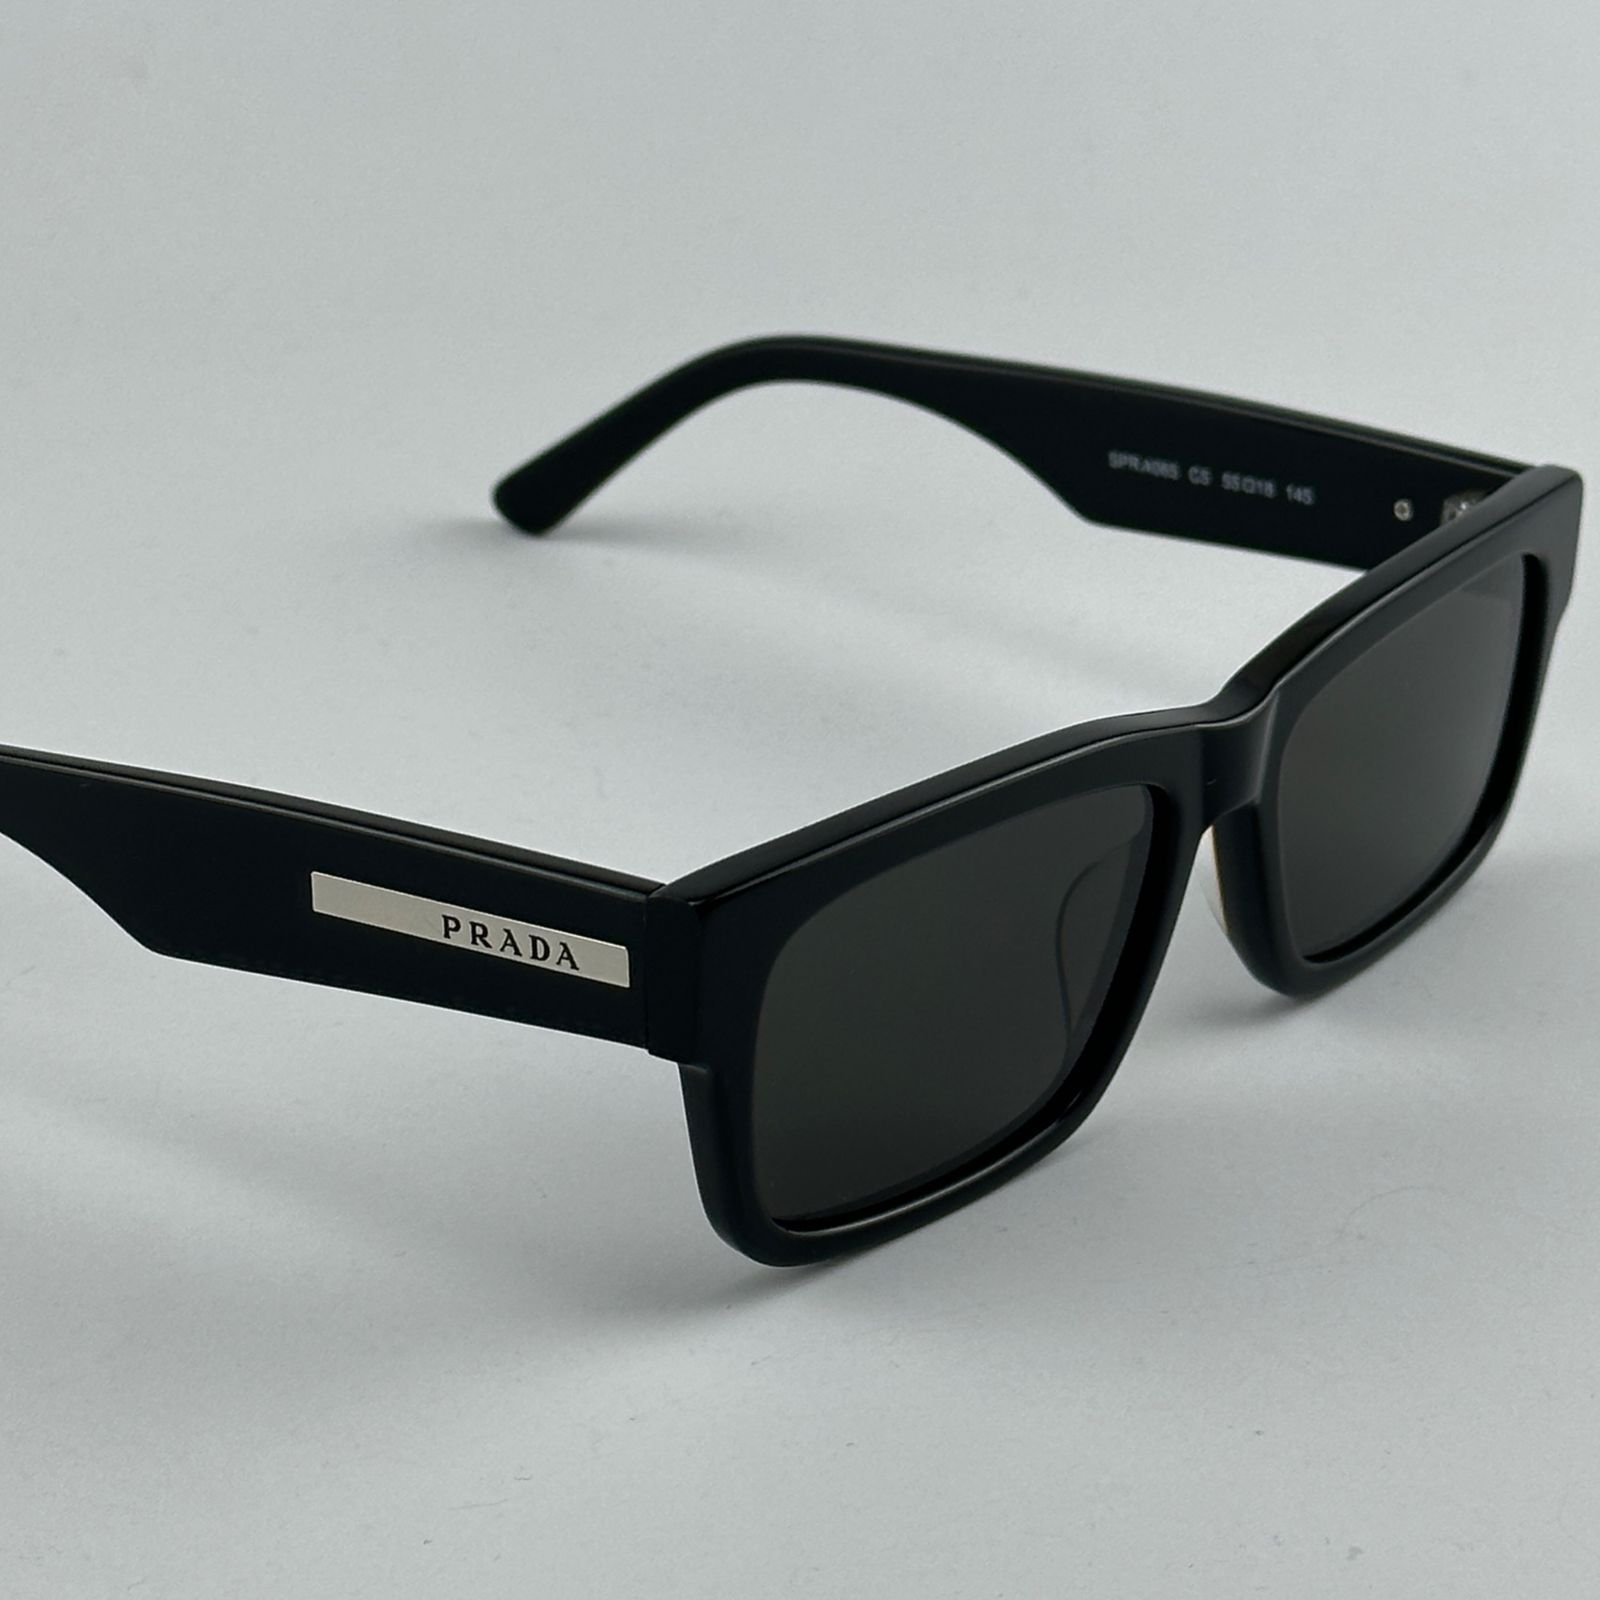 عینک آفتابی پرادا مدل SPR A065 C5 -  - 3